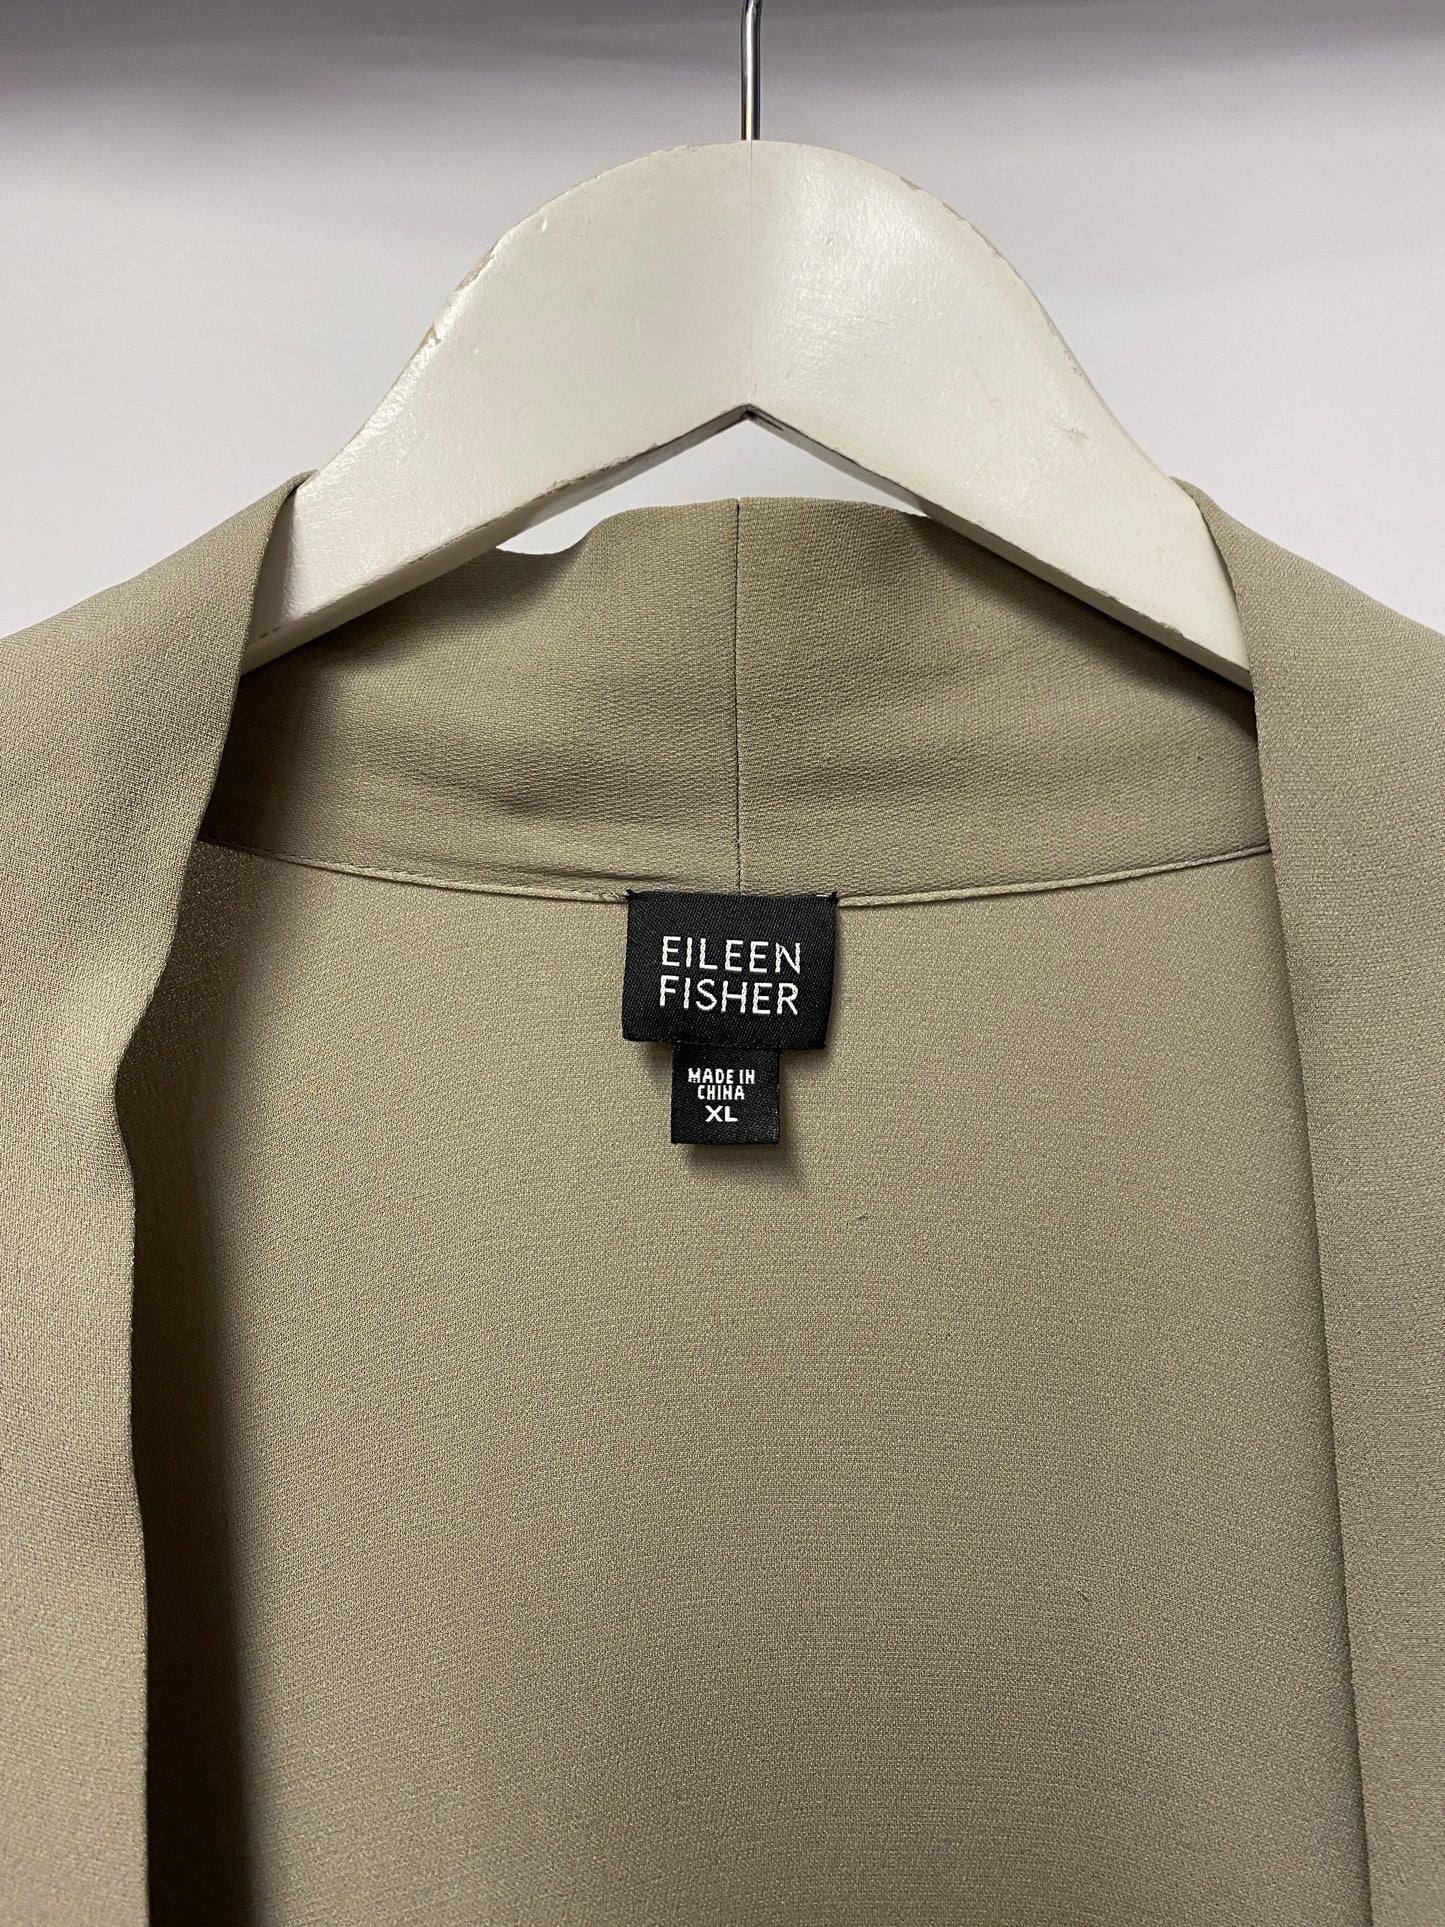 Eileen Fisher Stone Silk Cardigan XL